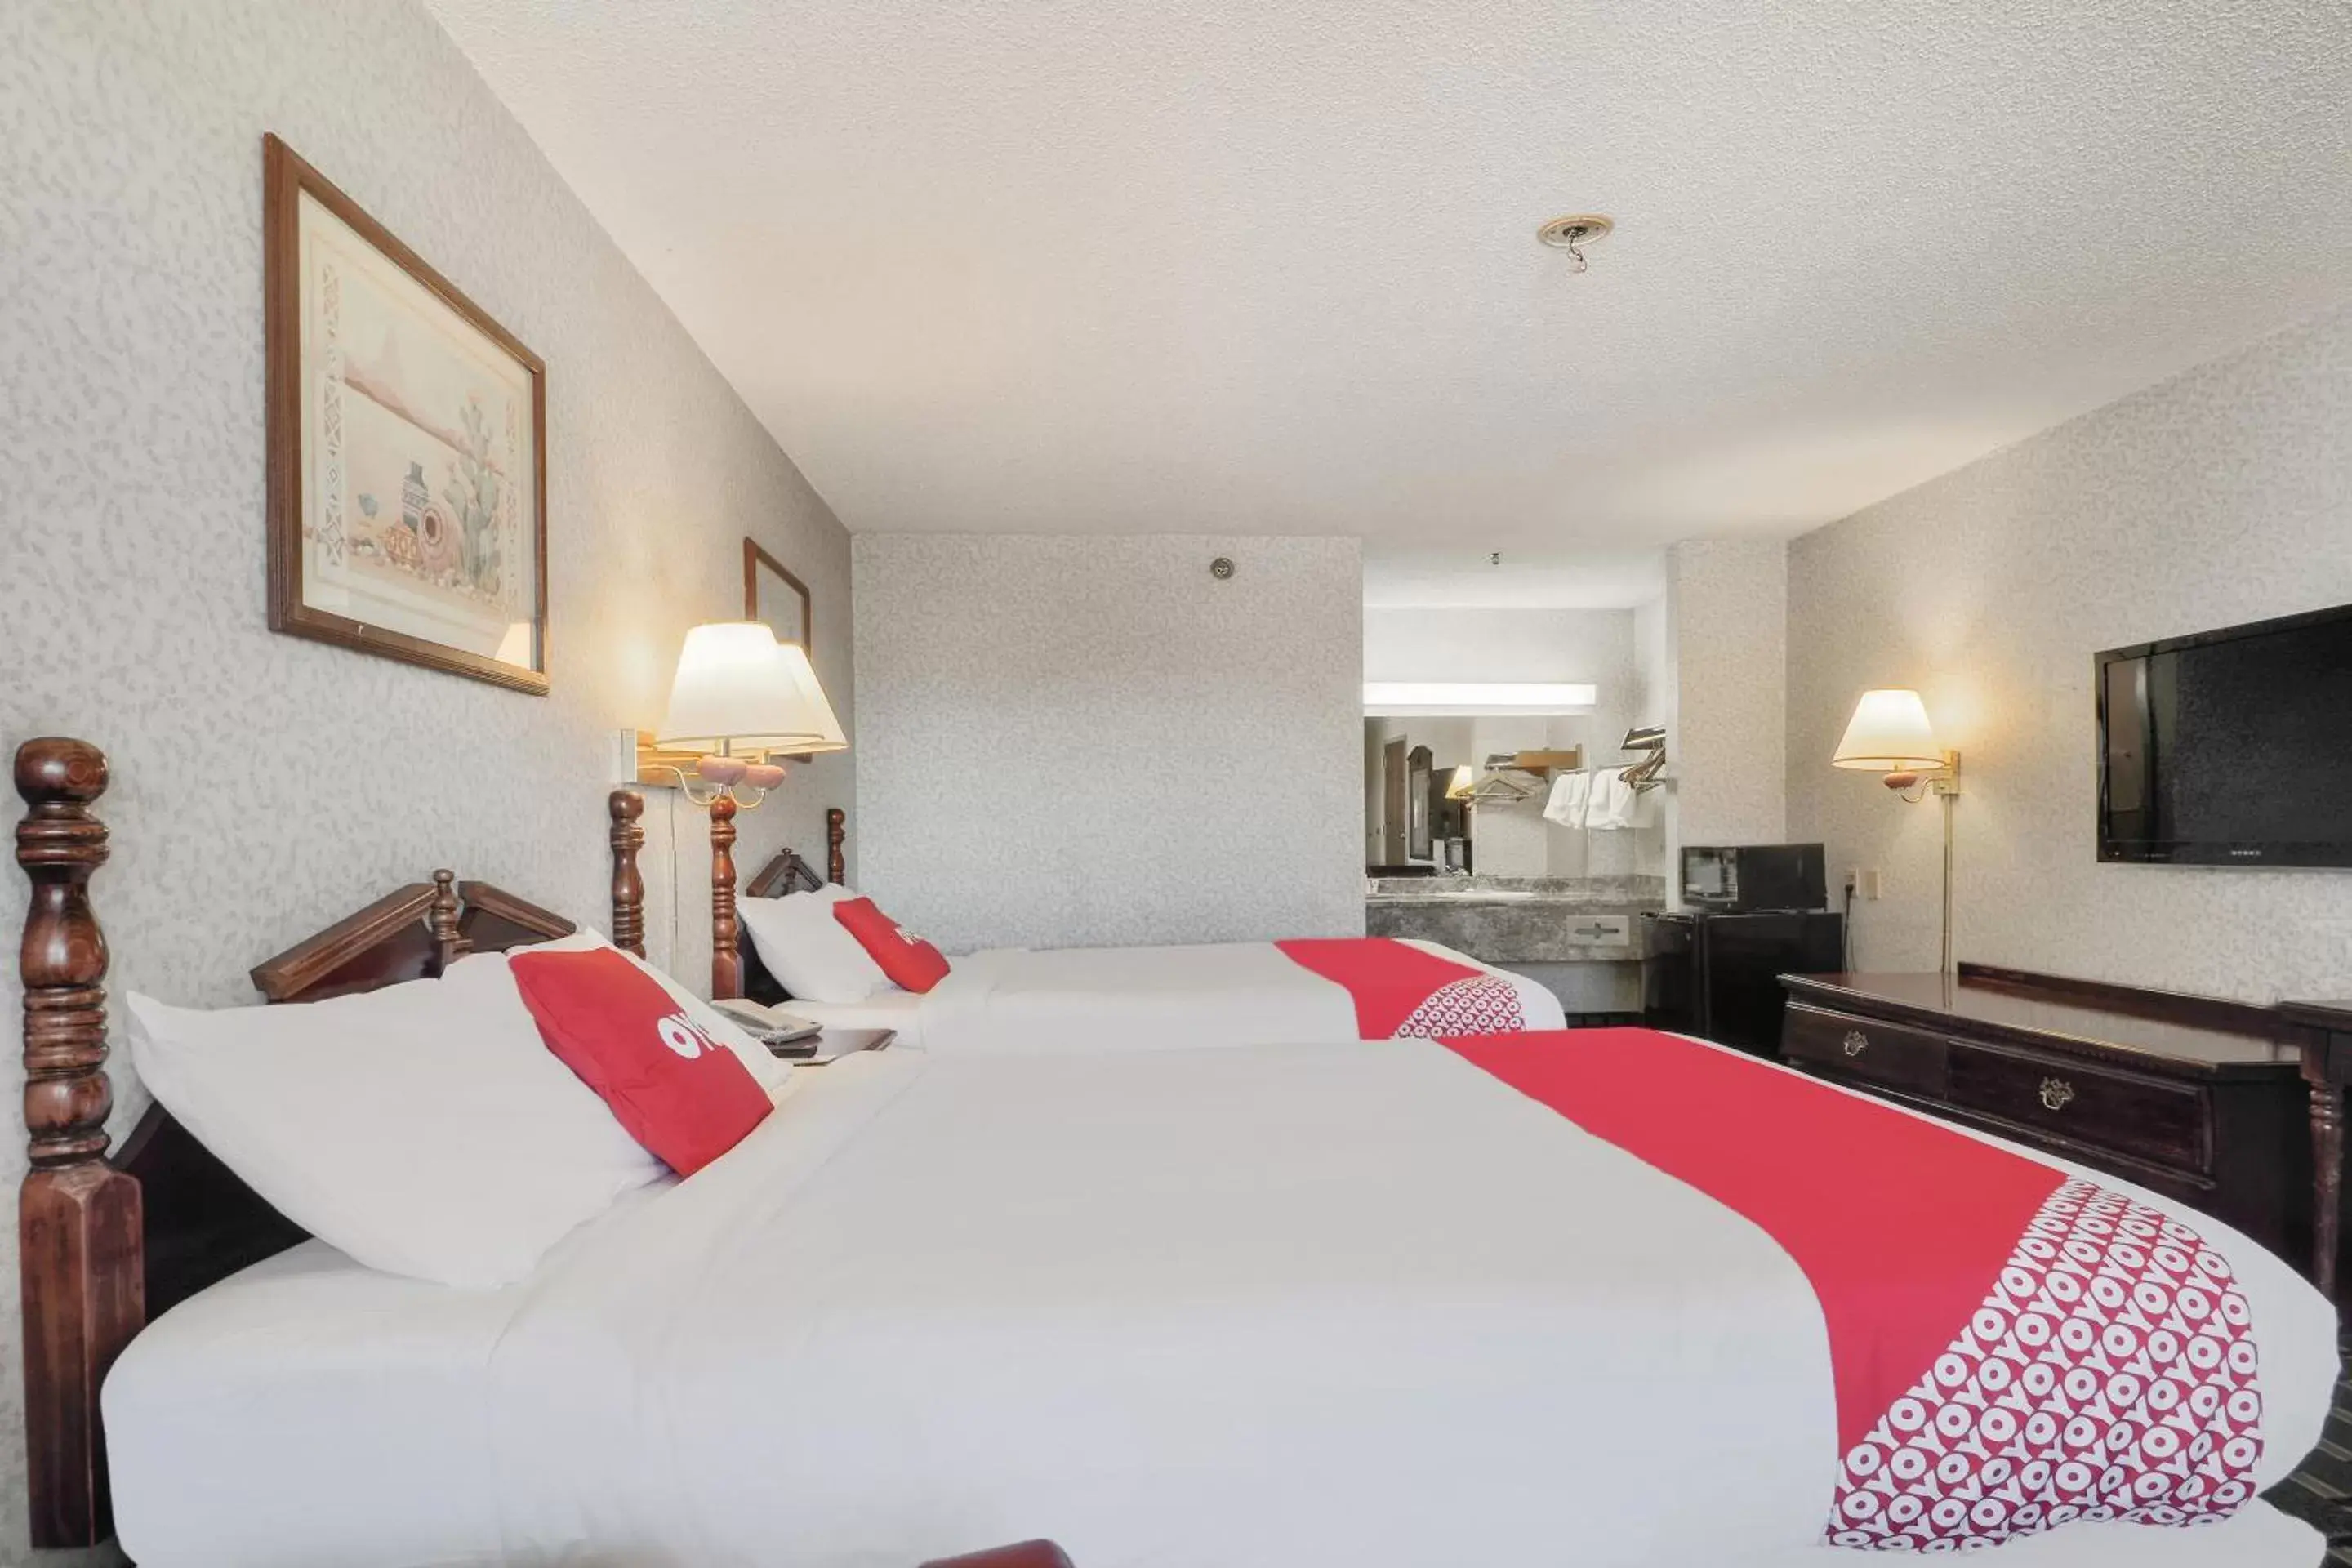 Bedroom, Bed in Lonestar Inn & Suites, Erick OK Hwy 40 BY OYO